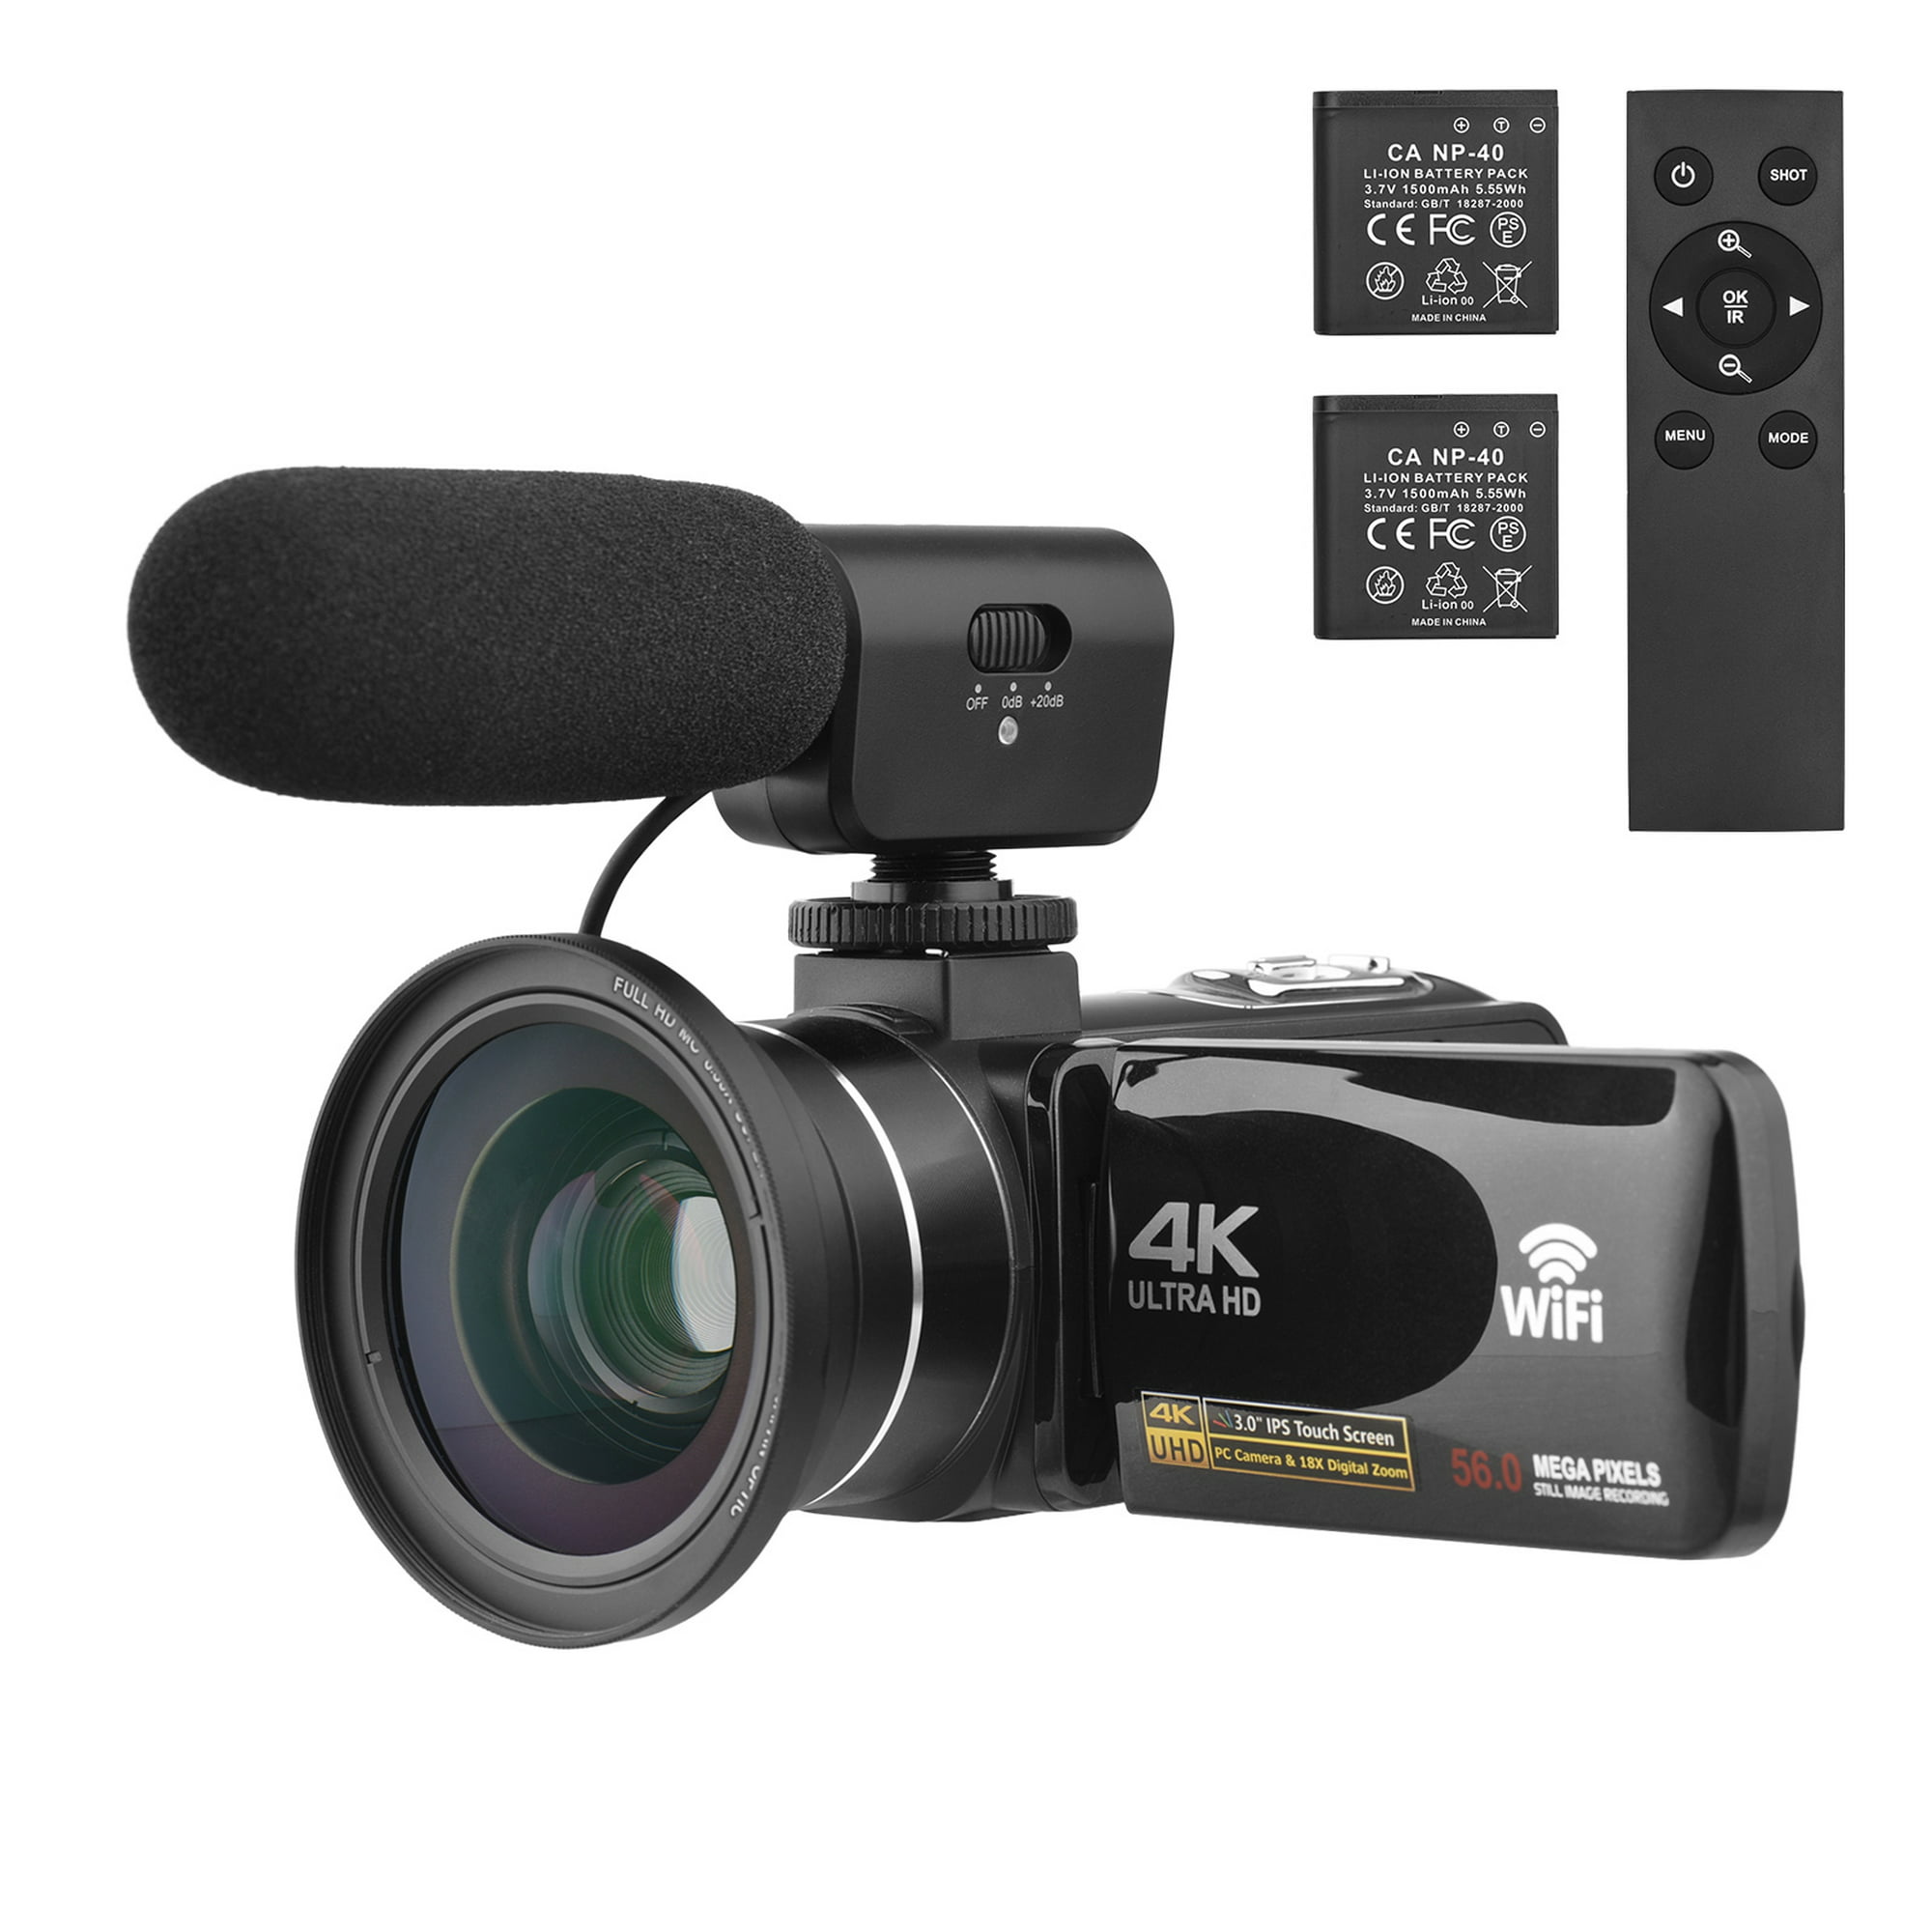 Cámara 4k de ultra alta definición con zoom digital 18x, cámara digital  64mp, pantalla táctil giratoria de 4,0 pulgadas, micrófono, control remoto,  tarjeta SD de 64 gb, dos baterías (negra) - K&F Concept